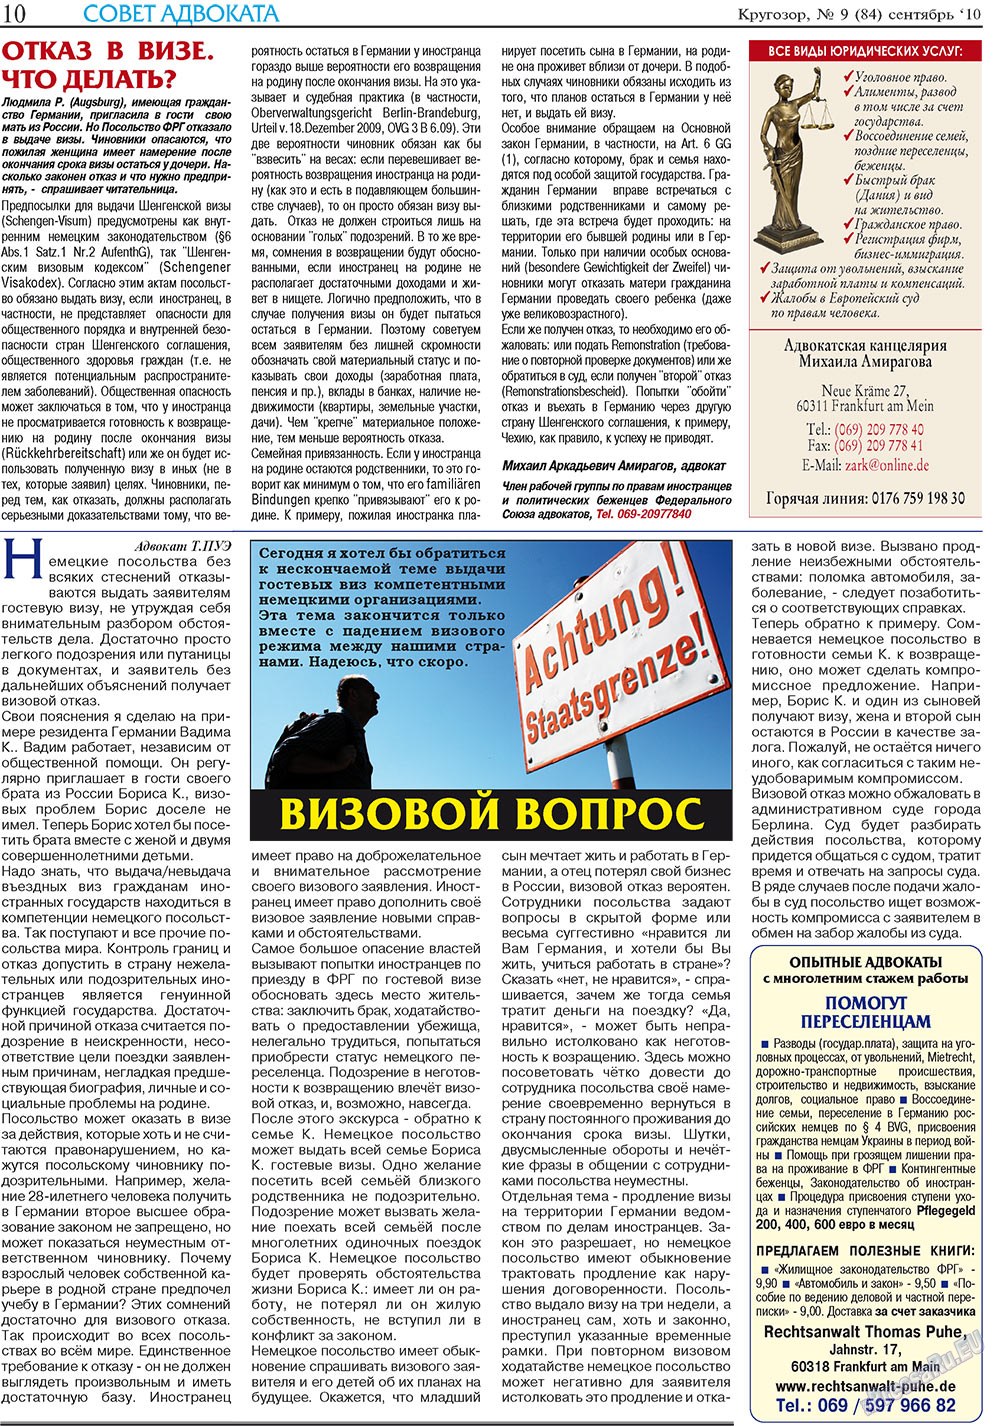 Кругозор плюс!, газета. 2010 №9 стр.10